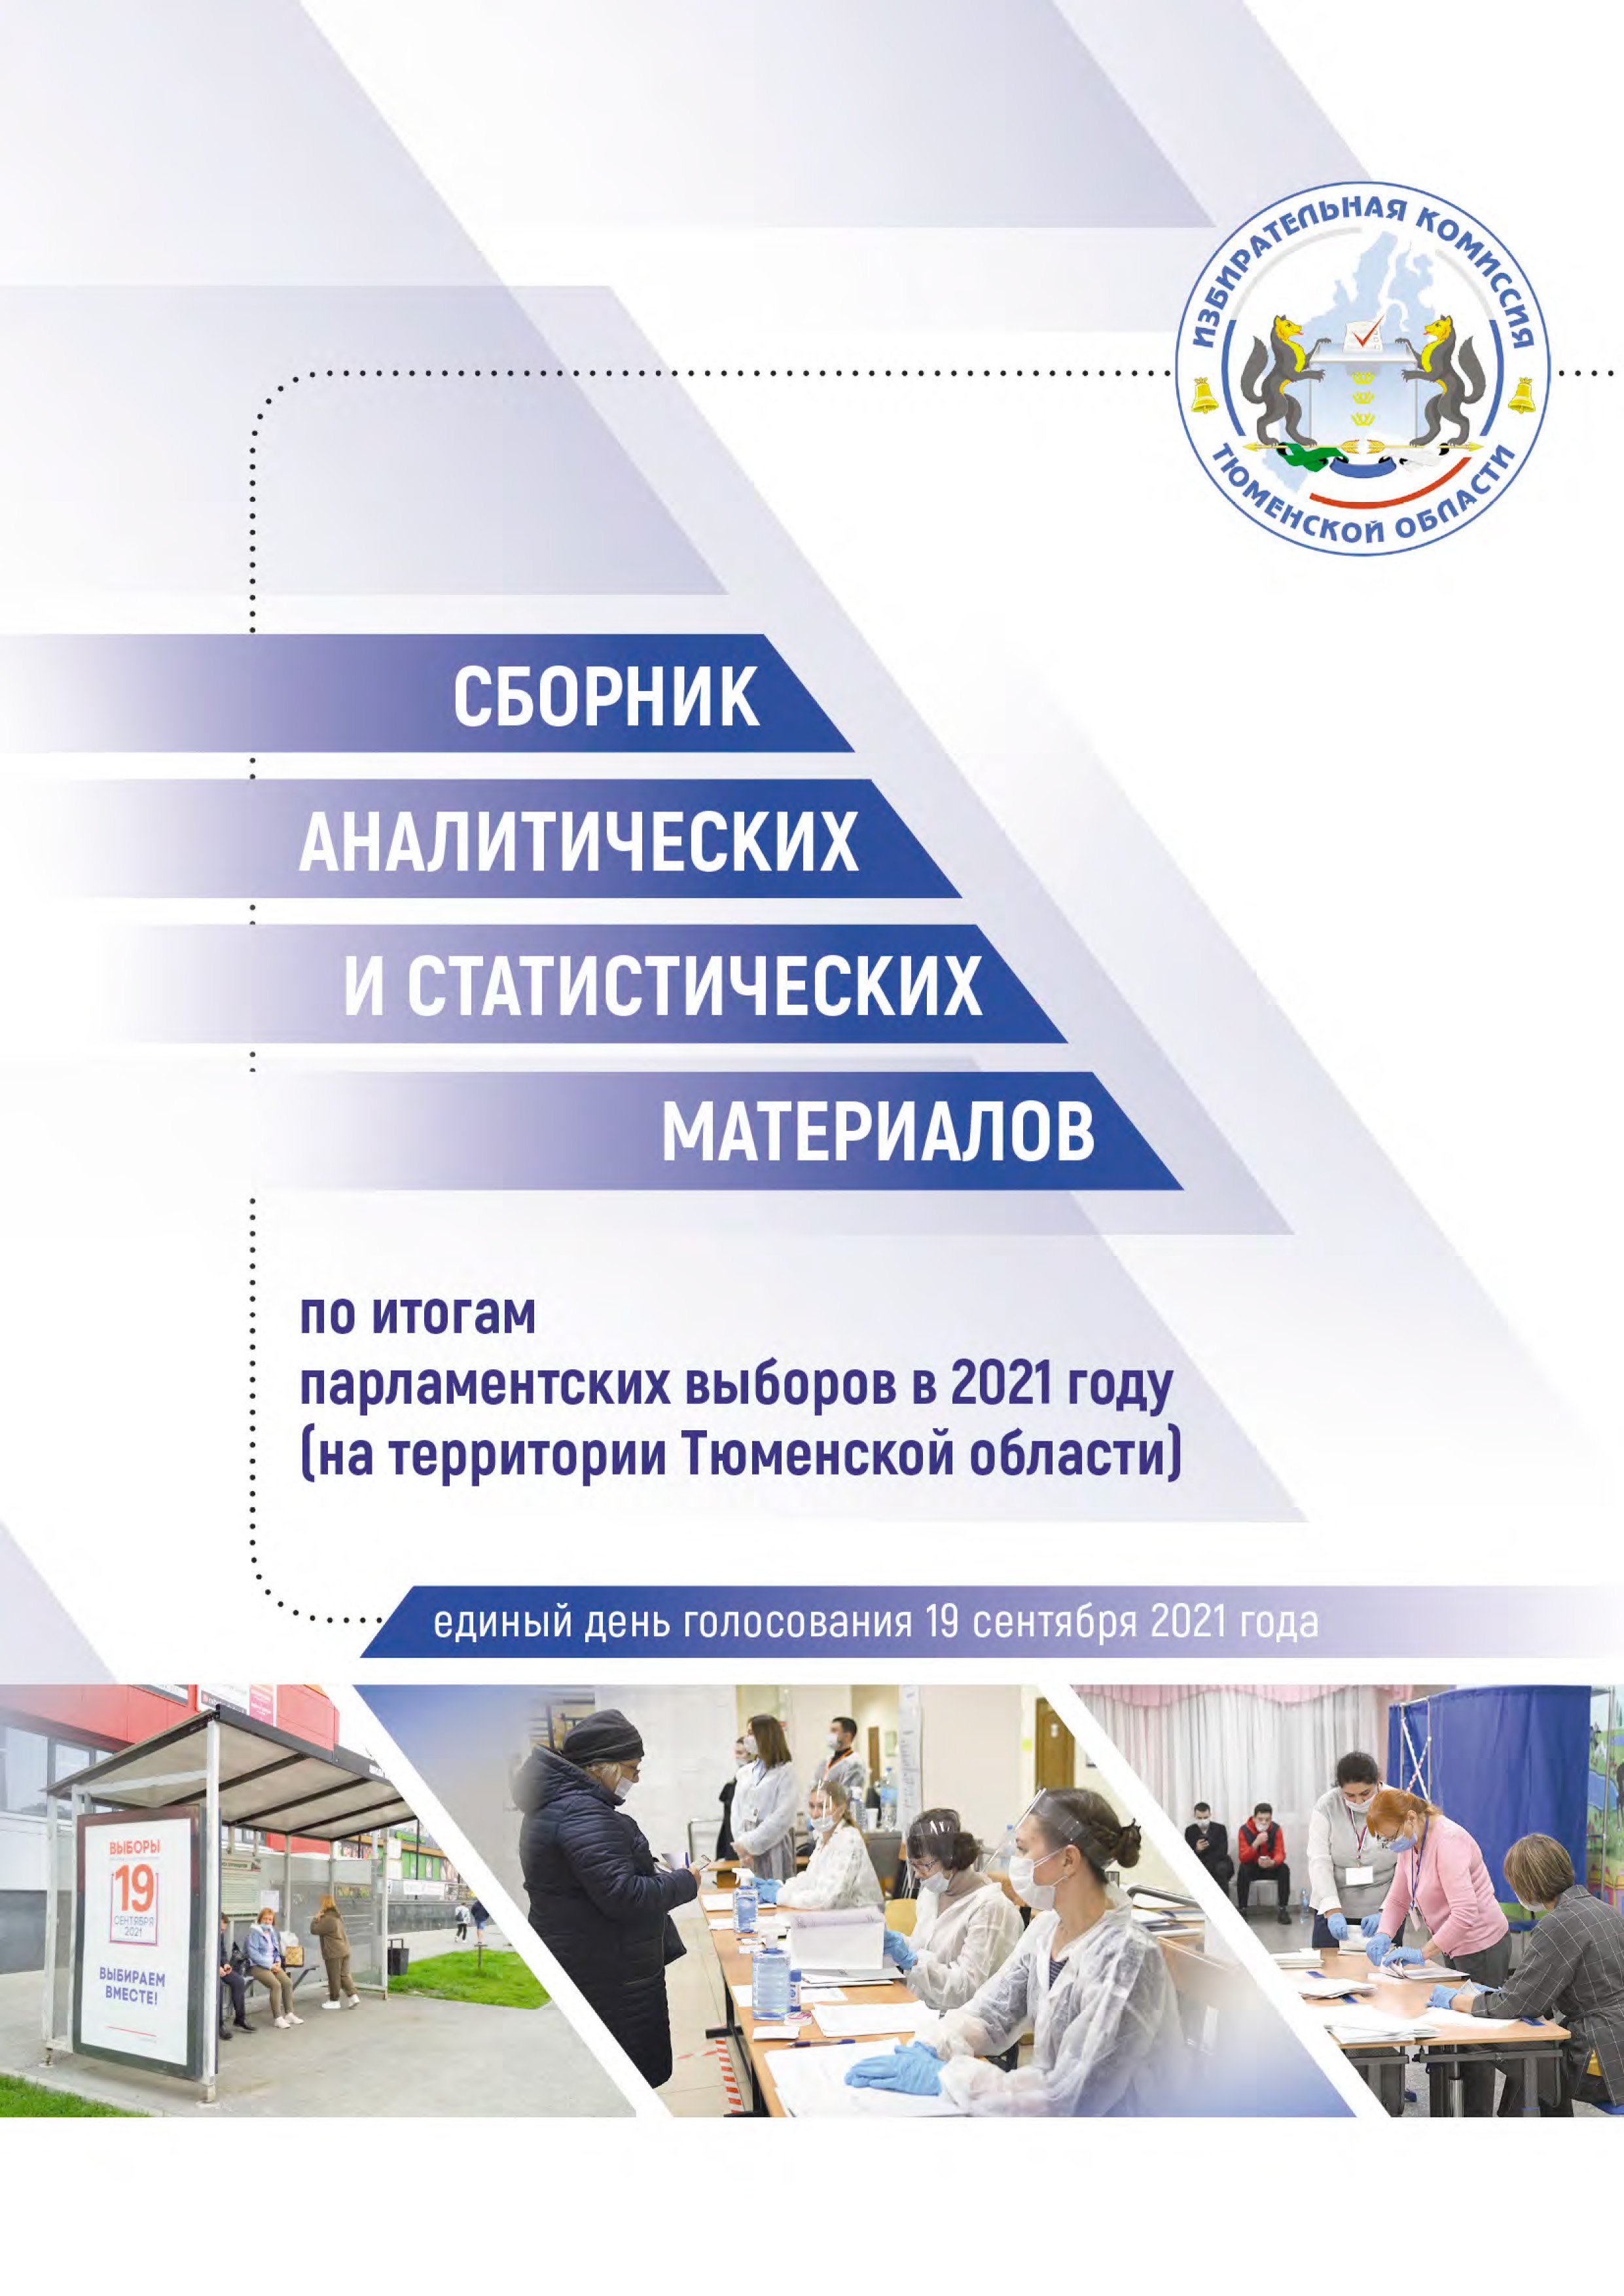 Сборник аналитических и статистических материалов по итогам парламентских выборов в 2021 году (на территории Тюменской области)